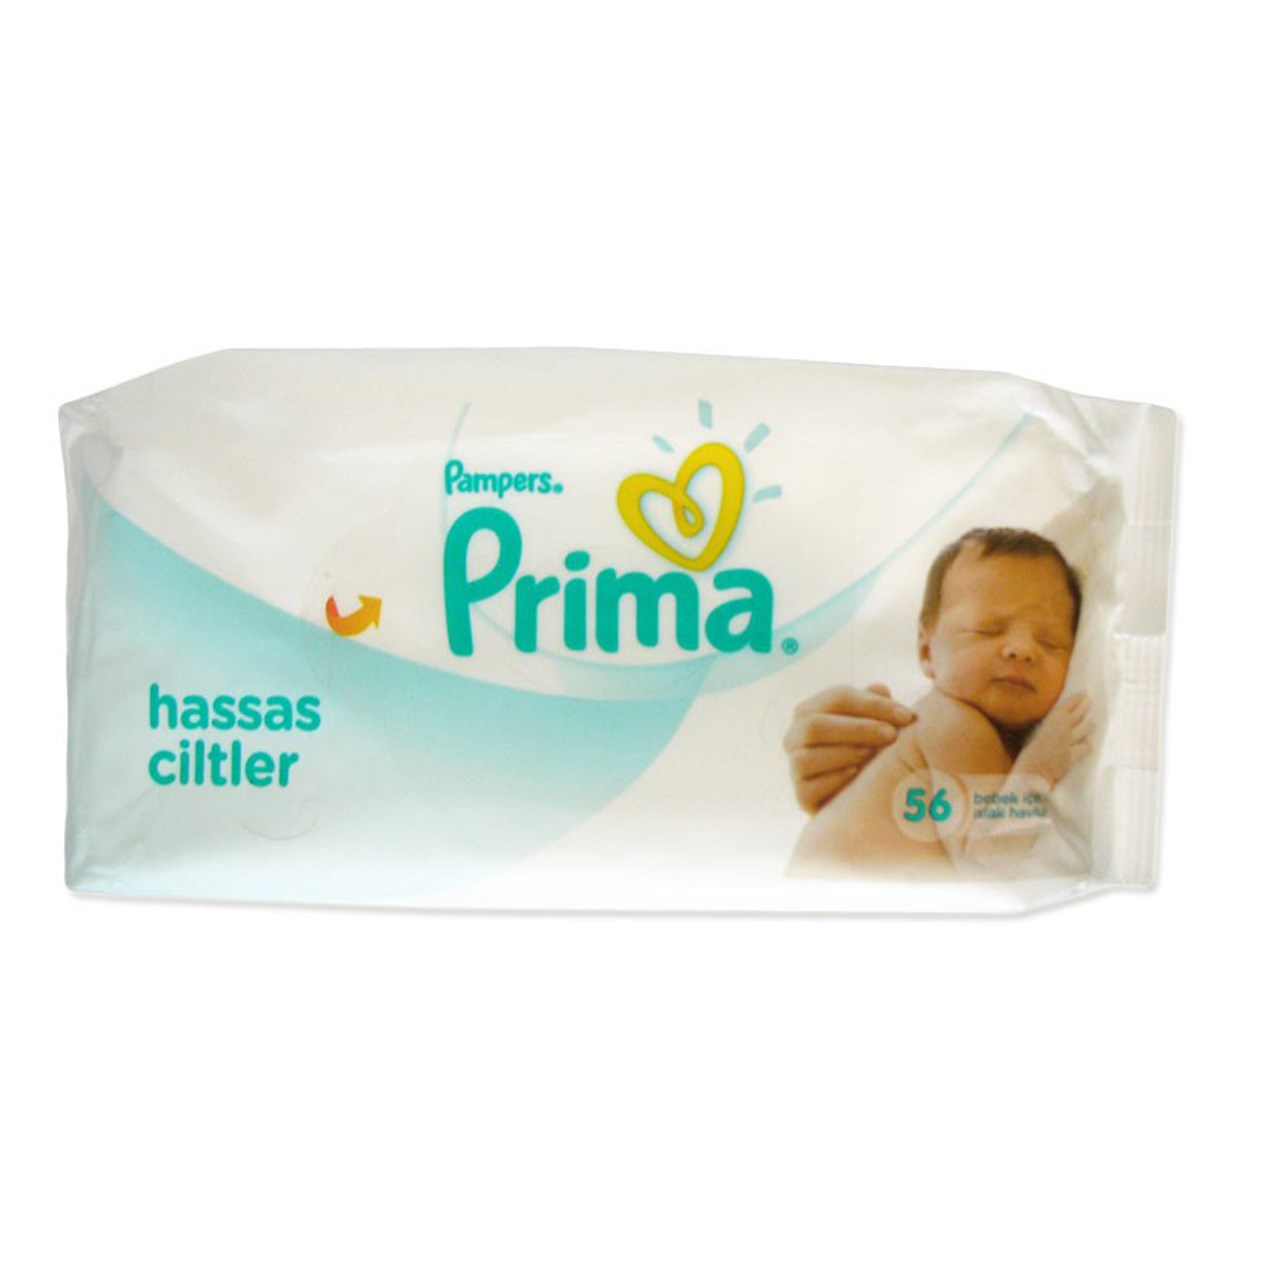 دستمال مرطوب کودک پریما مدل Hassas Ciltler بسته 56 عددی